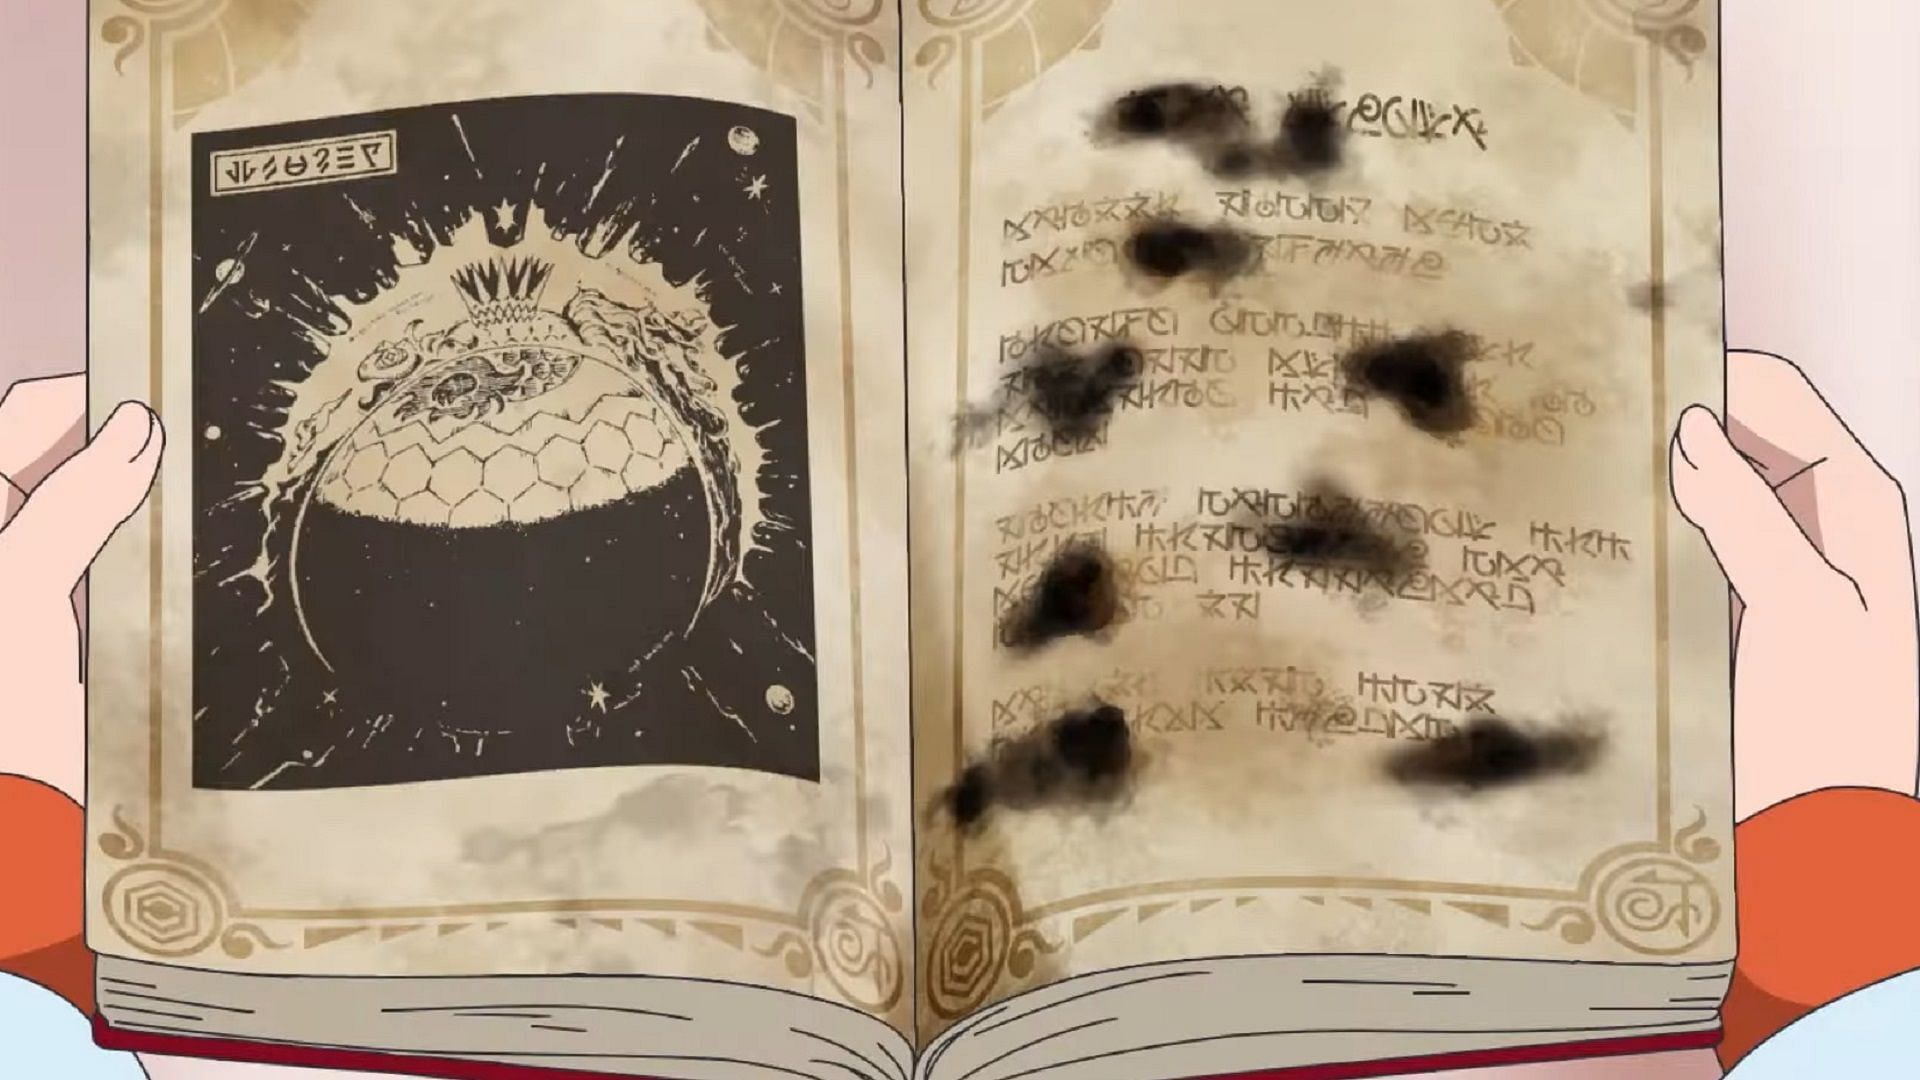 Uno schizzo di una creatura simile a Terapagos nel Libro Scarlatto nell'episodio 56 di Pokemon Horizons. (Immagine tramite The Pokemon Company)